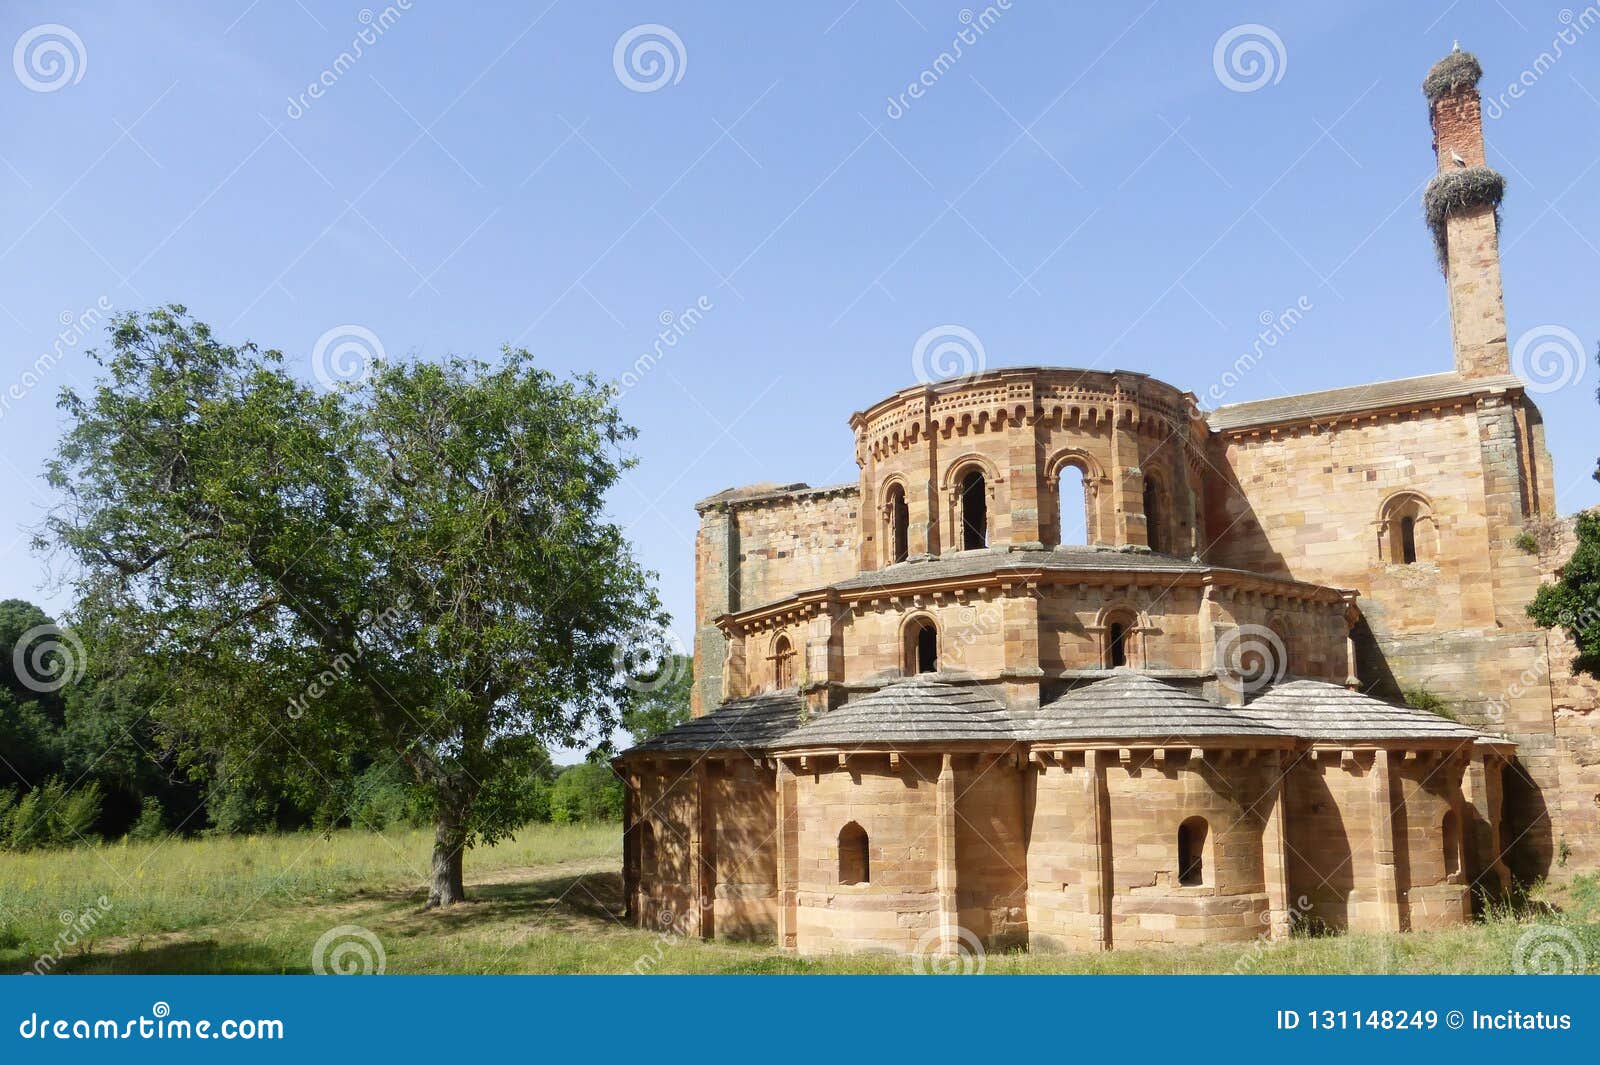 old monastery of moreruela in zamora